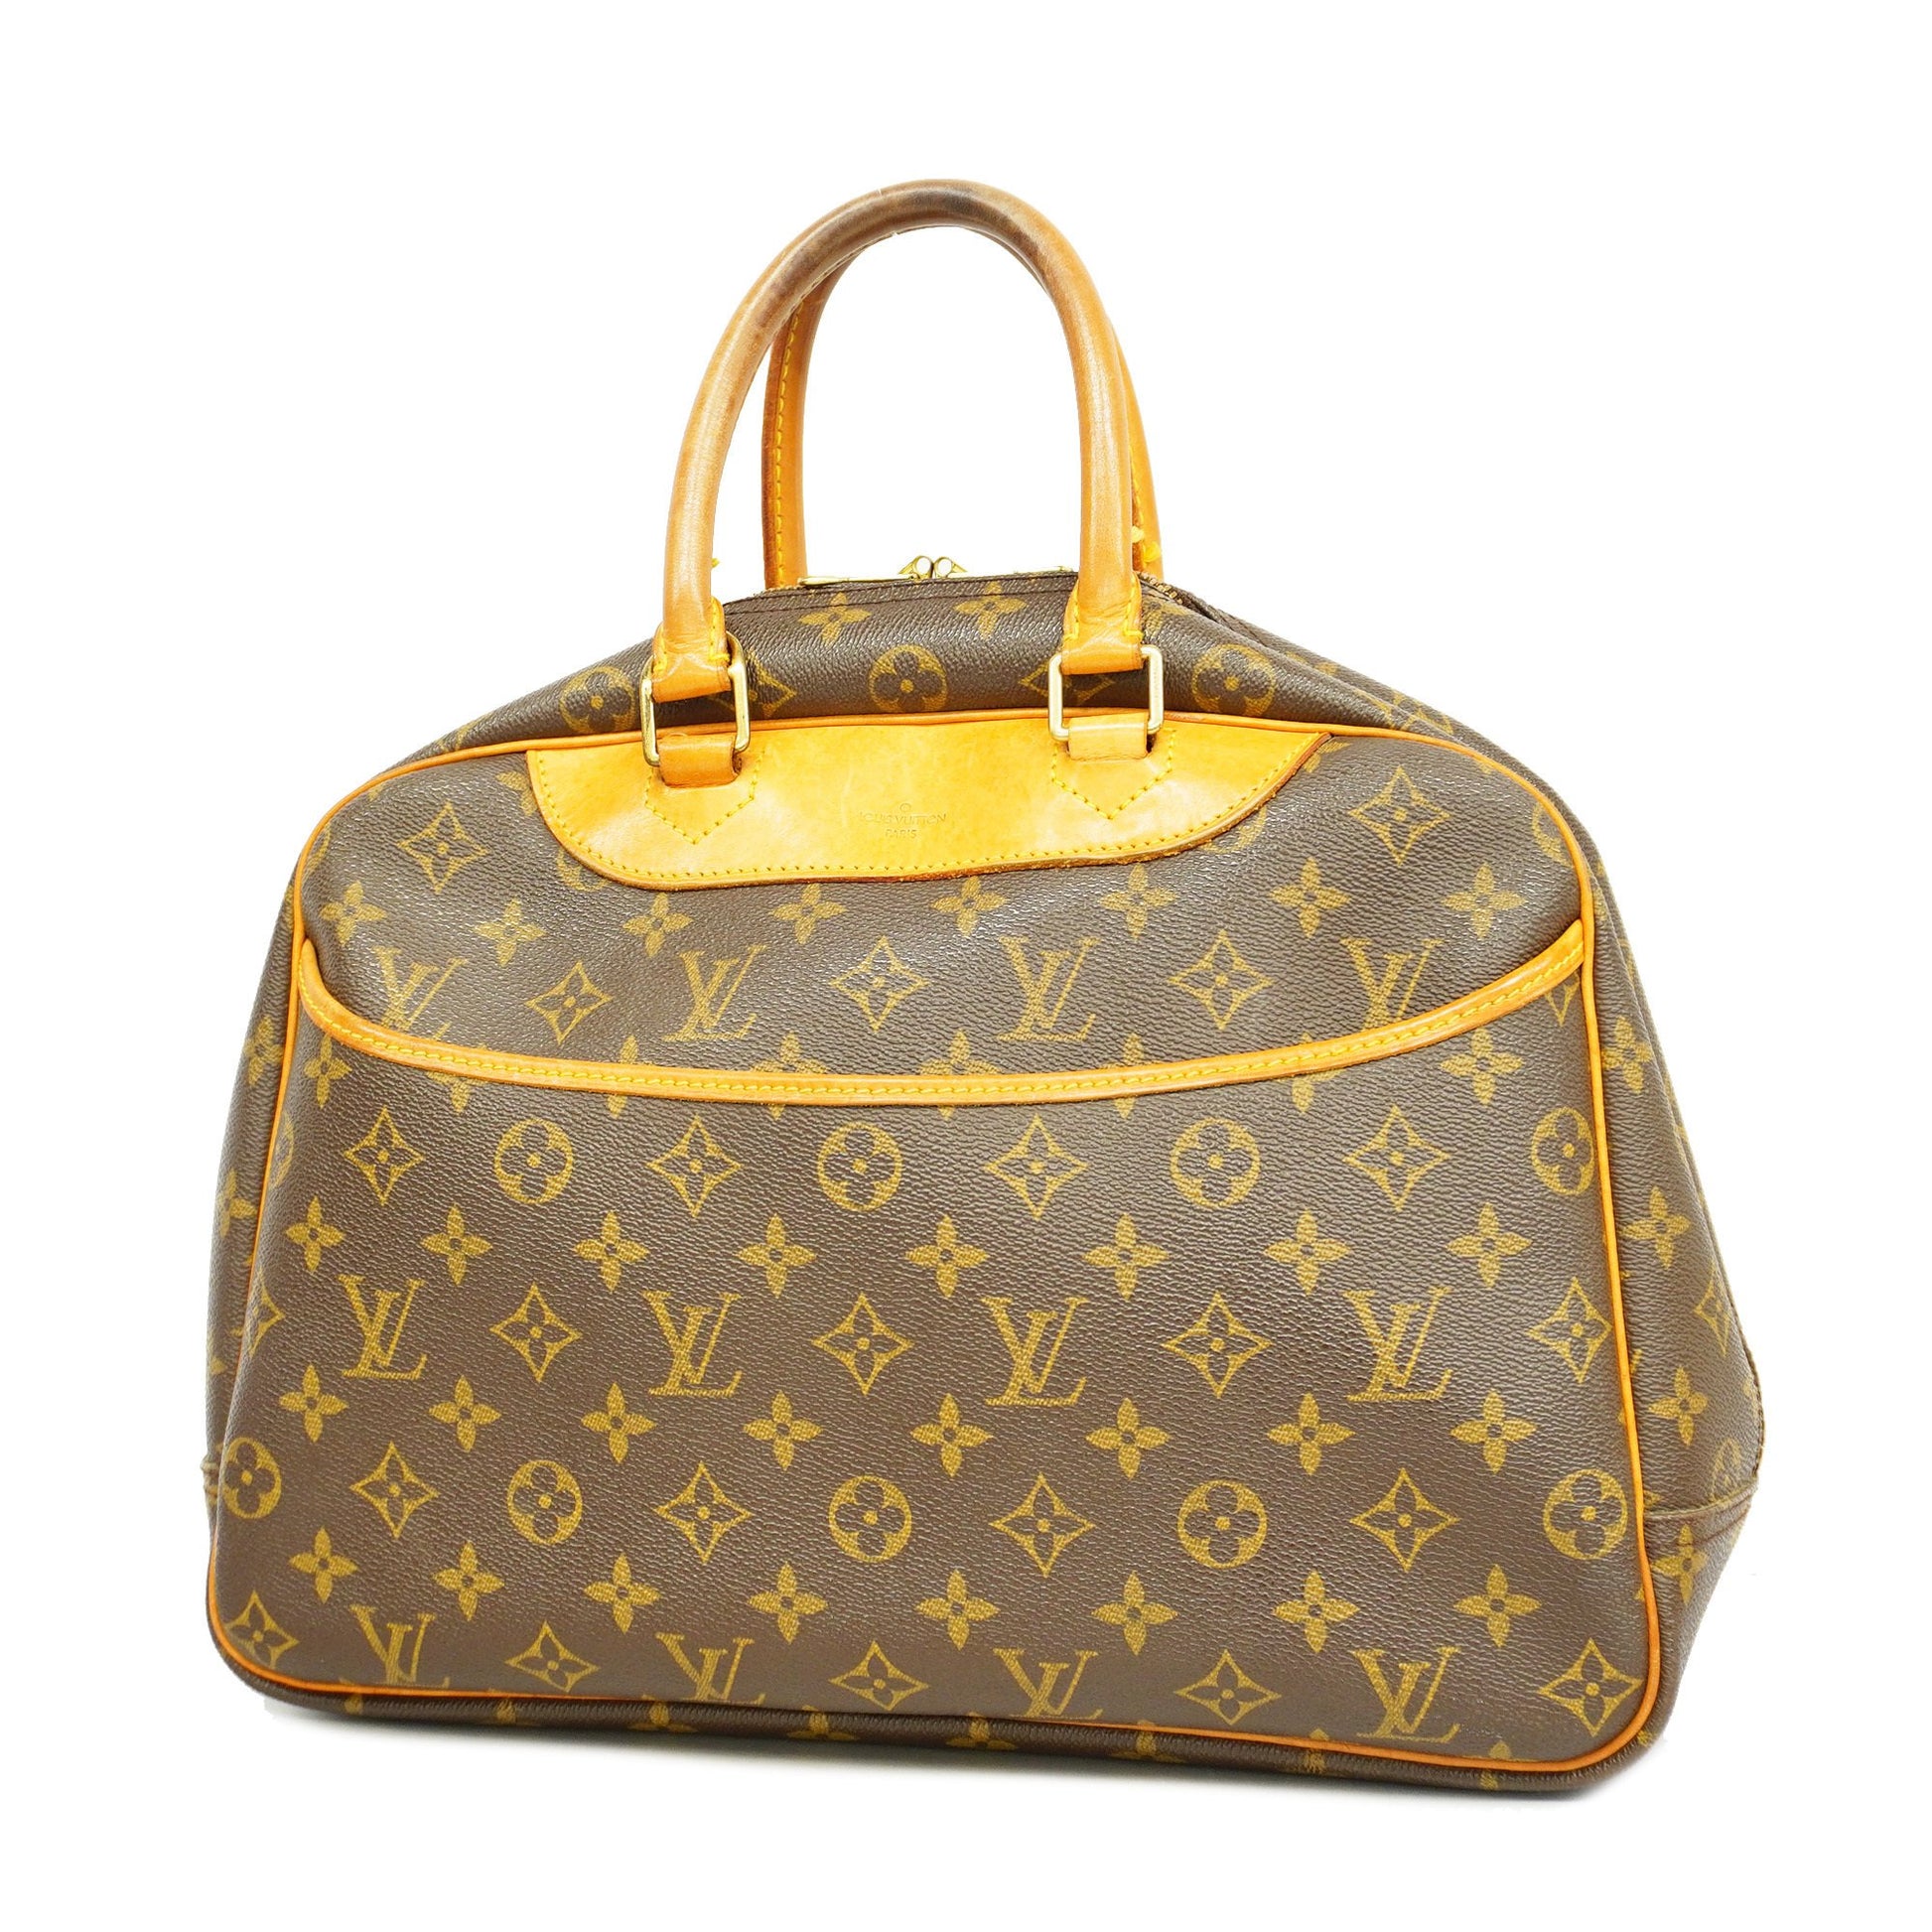 Louis Vuitton M47270 Deauville Monogram Bag